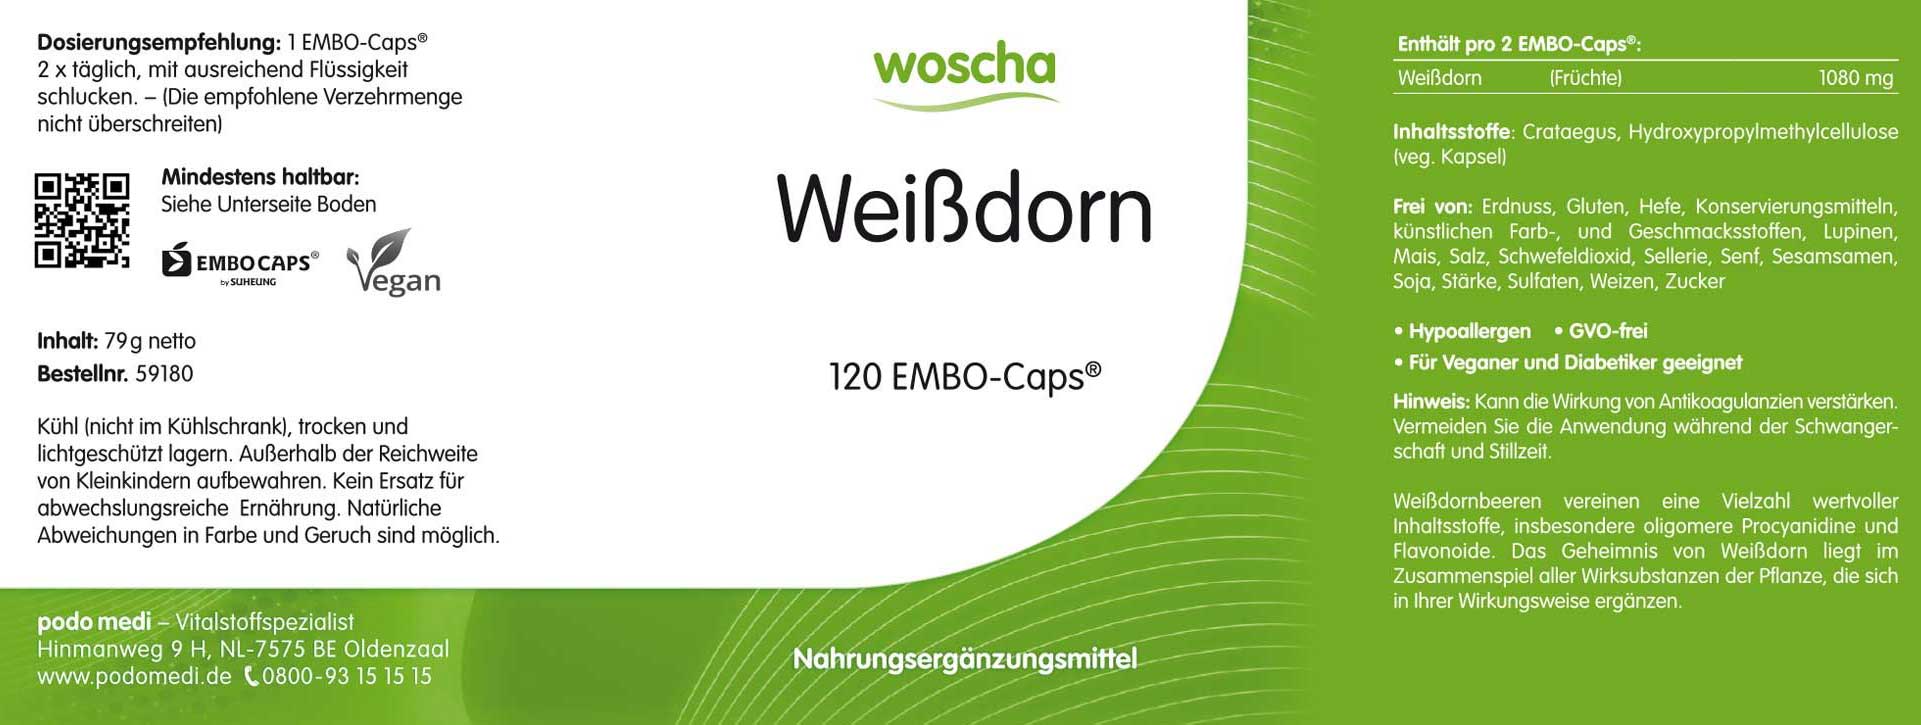 Woscha Weißdorn von podo medi beinhaltet 120 Kapseln Etikett